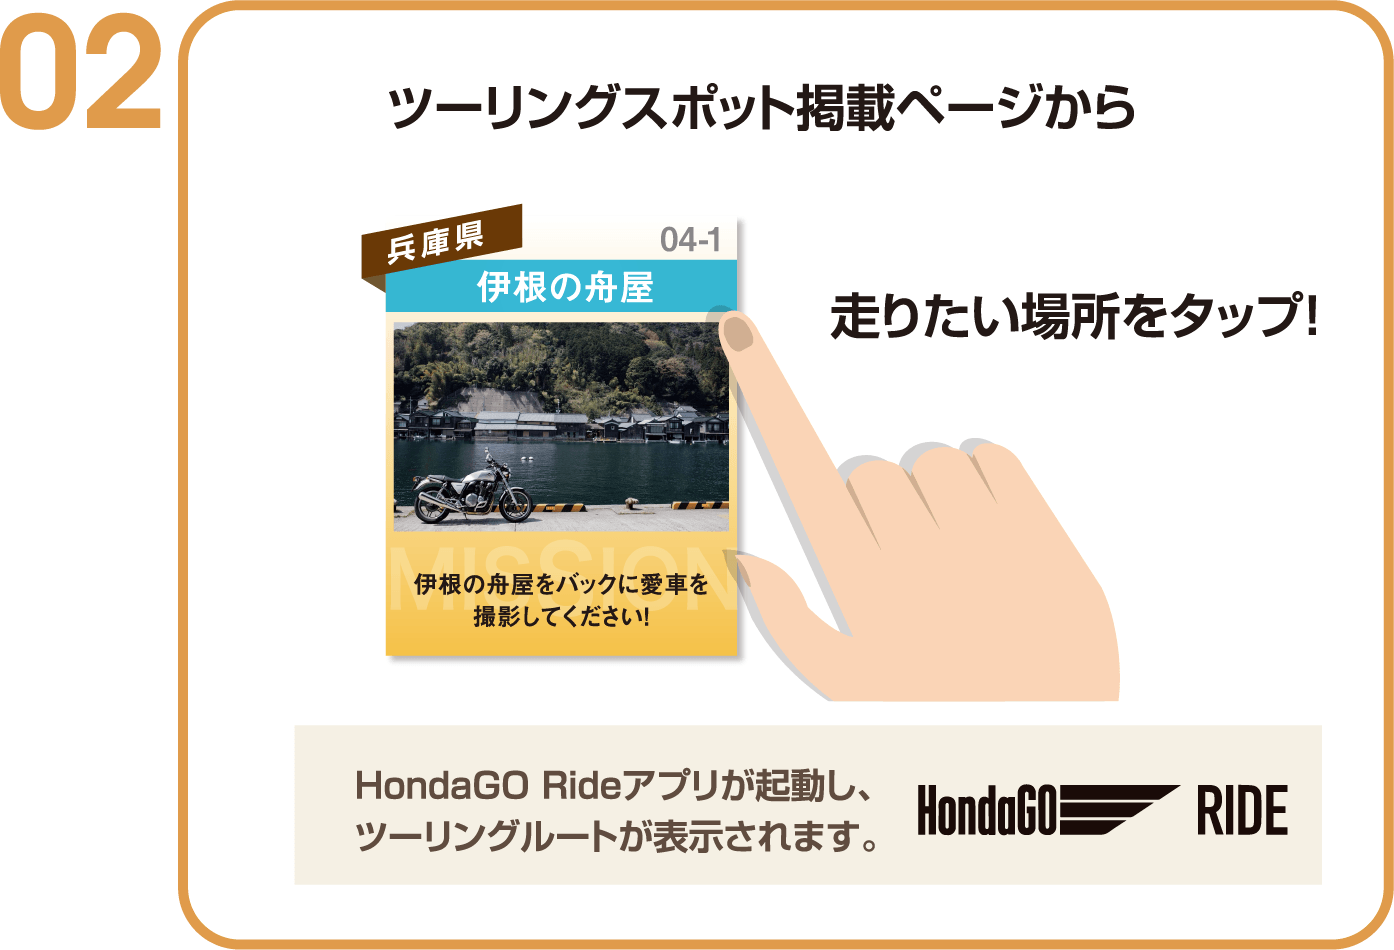 ツーリングスポット掲載ページから走りたい場所をタップ！HondaGO Rideアプリが起動し、
ツーリングルートが表示されます。